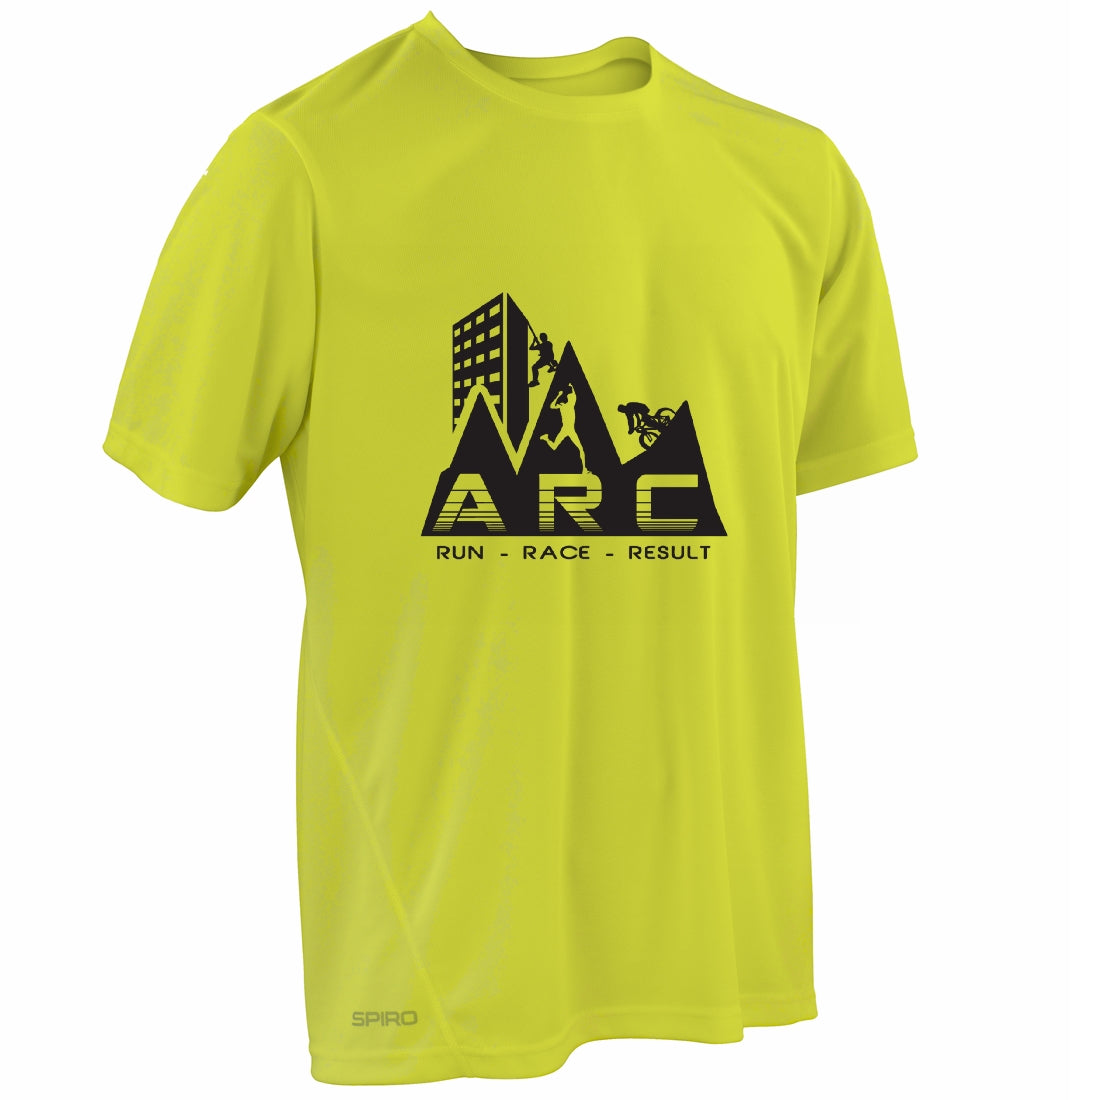 Perse ARC Racing T-Shirt